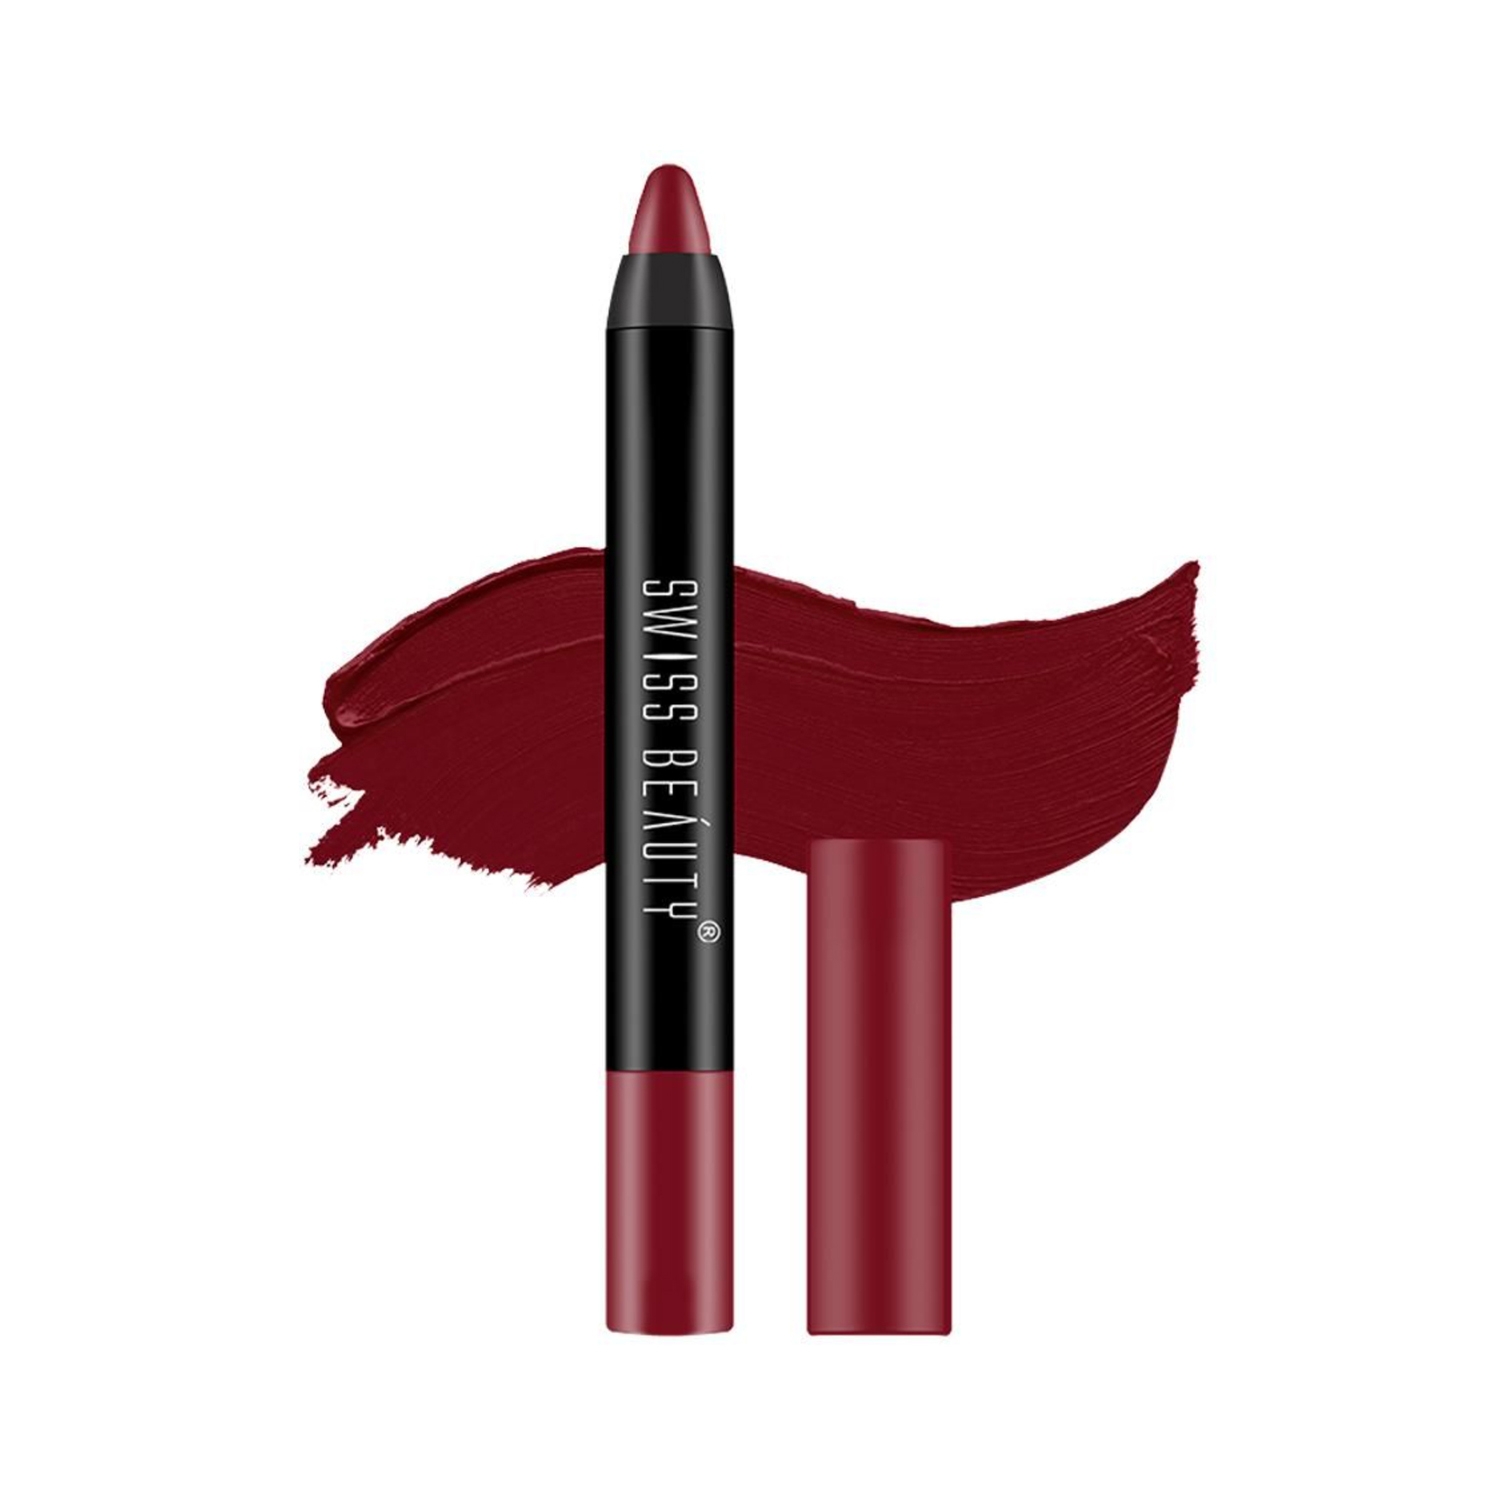 Swiss Beauty | Swiss Beauty Non Transfer Matte Crayon Lipstick - Bloodshot Maroon (3.5g)